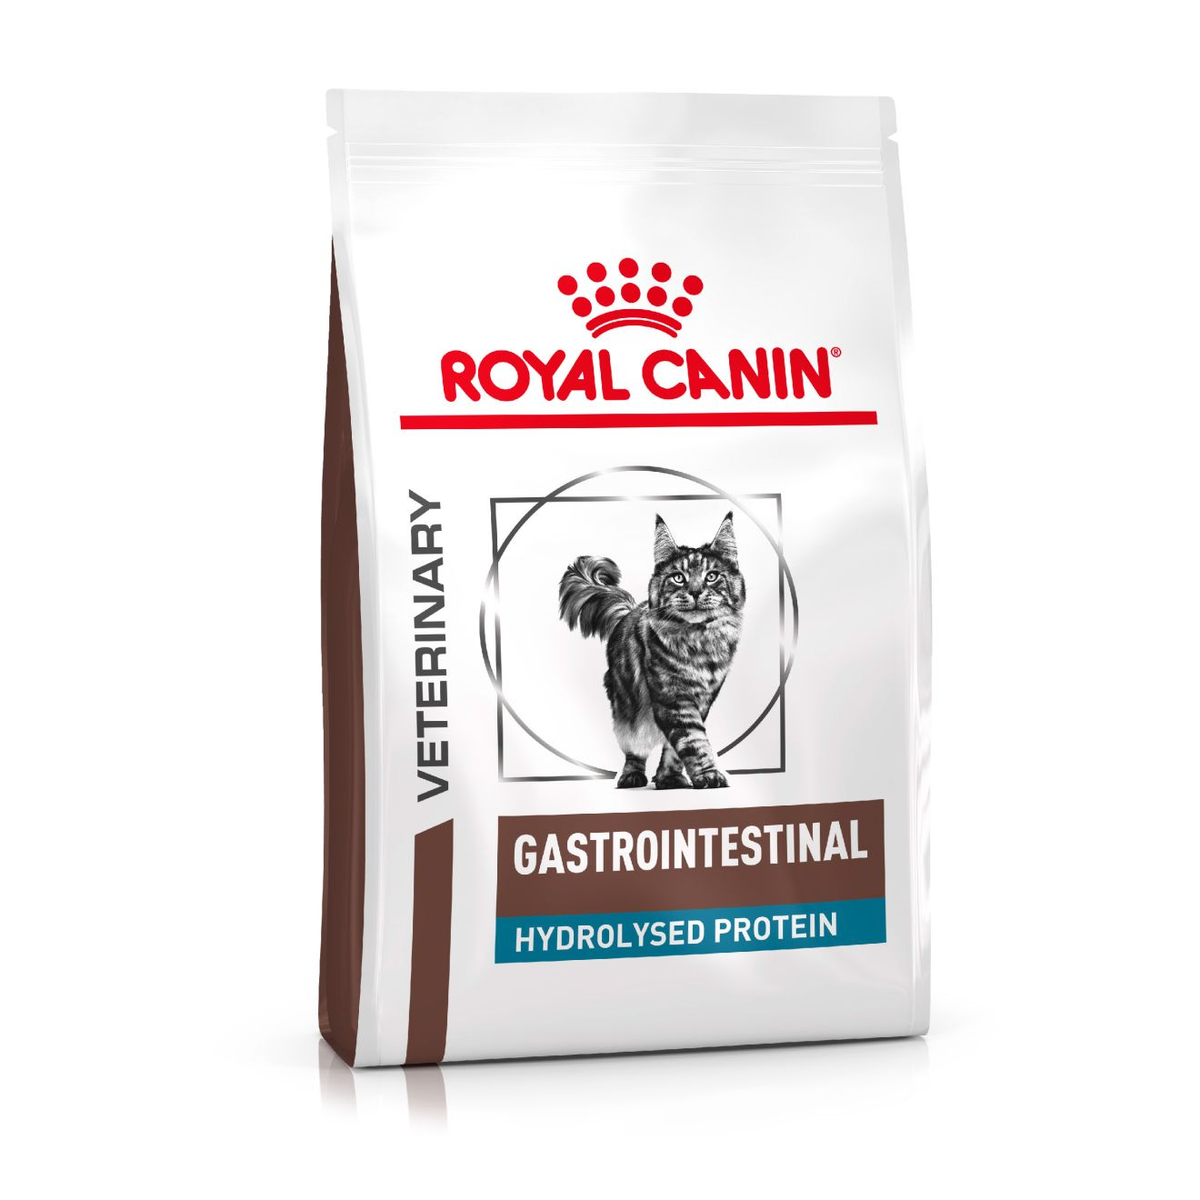 Royal Canin Gastrointestinal Hydrolyzed Protein Cat food 12oz